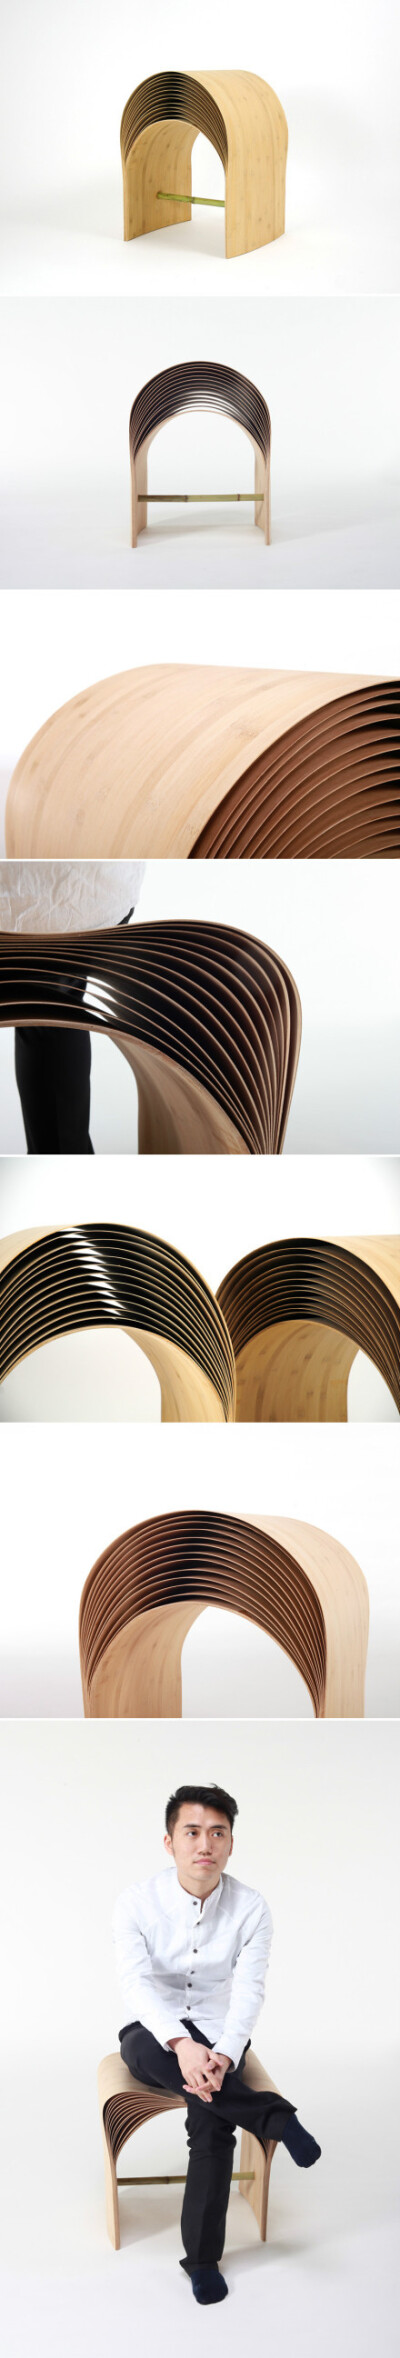 陈旻设计的“杭州凳”，用16片0.9毫米的竹片制作，凳腿竹片胶合提供抗压力，凳面竹片发散提供柔软座感，几乎完美的力学构造。